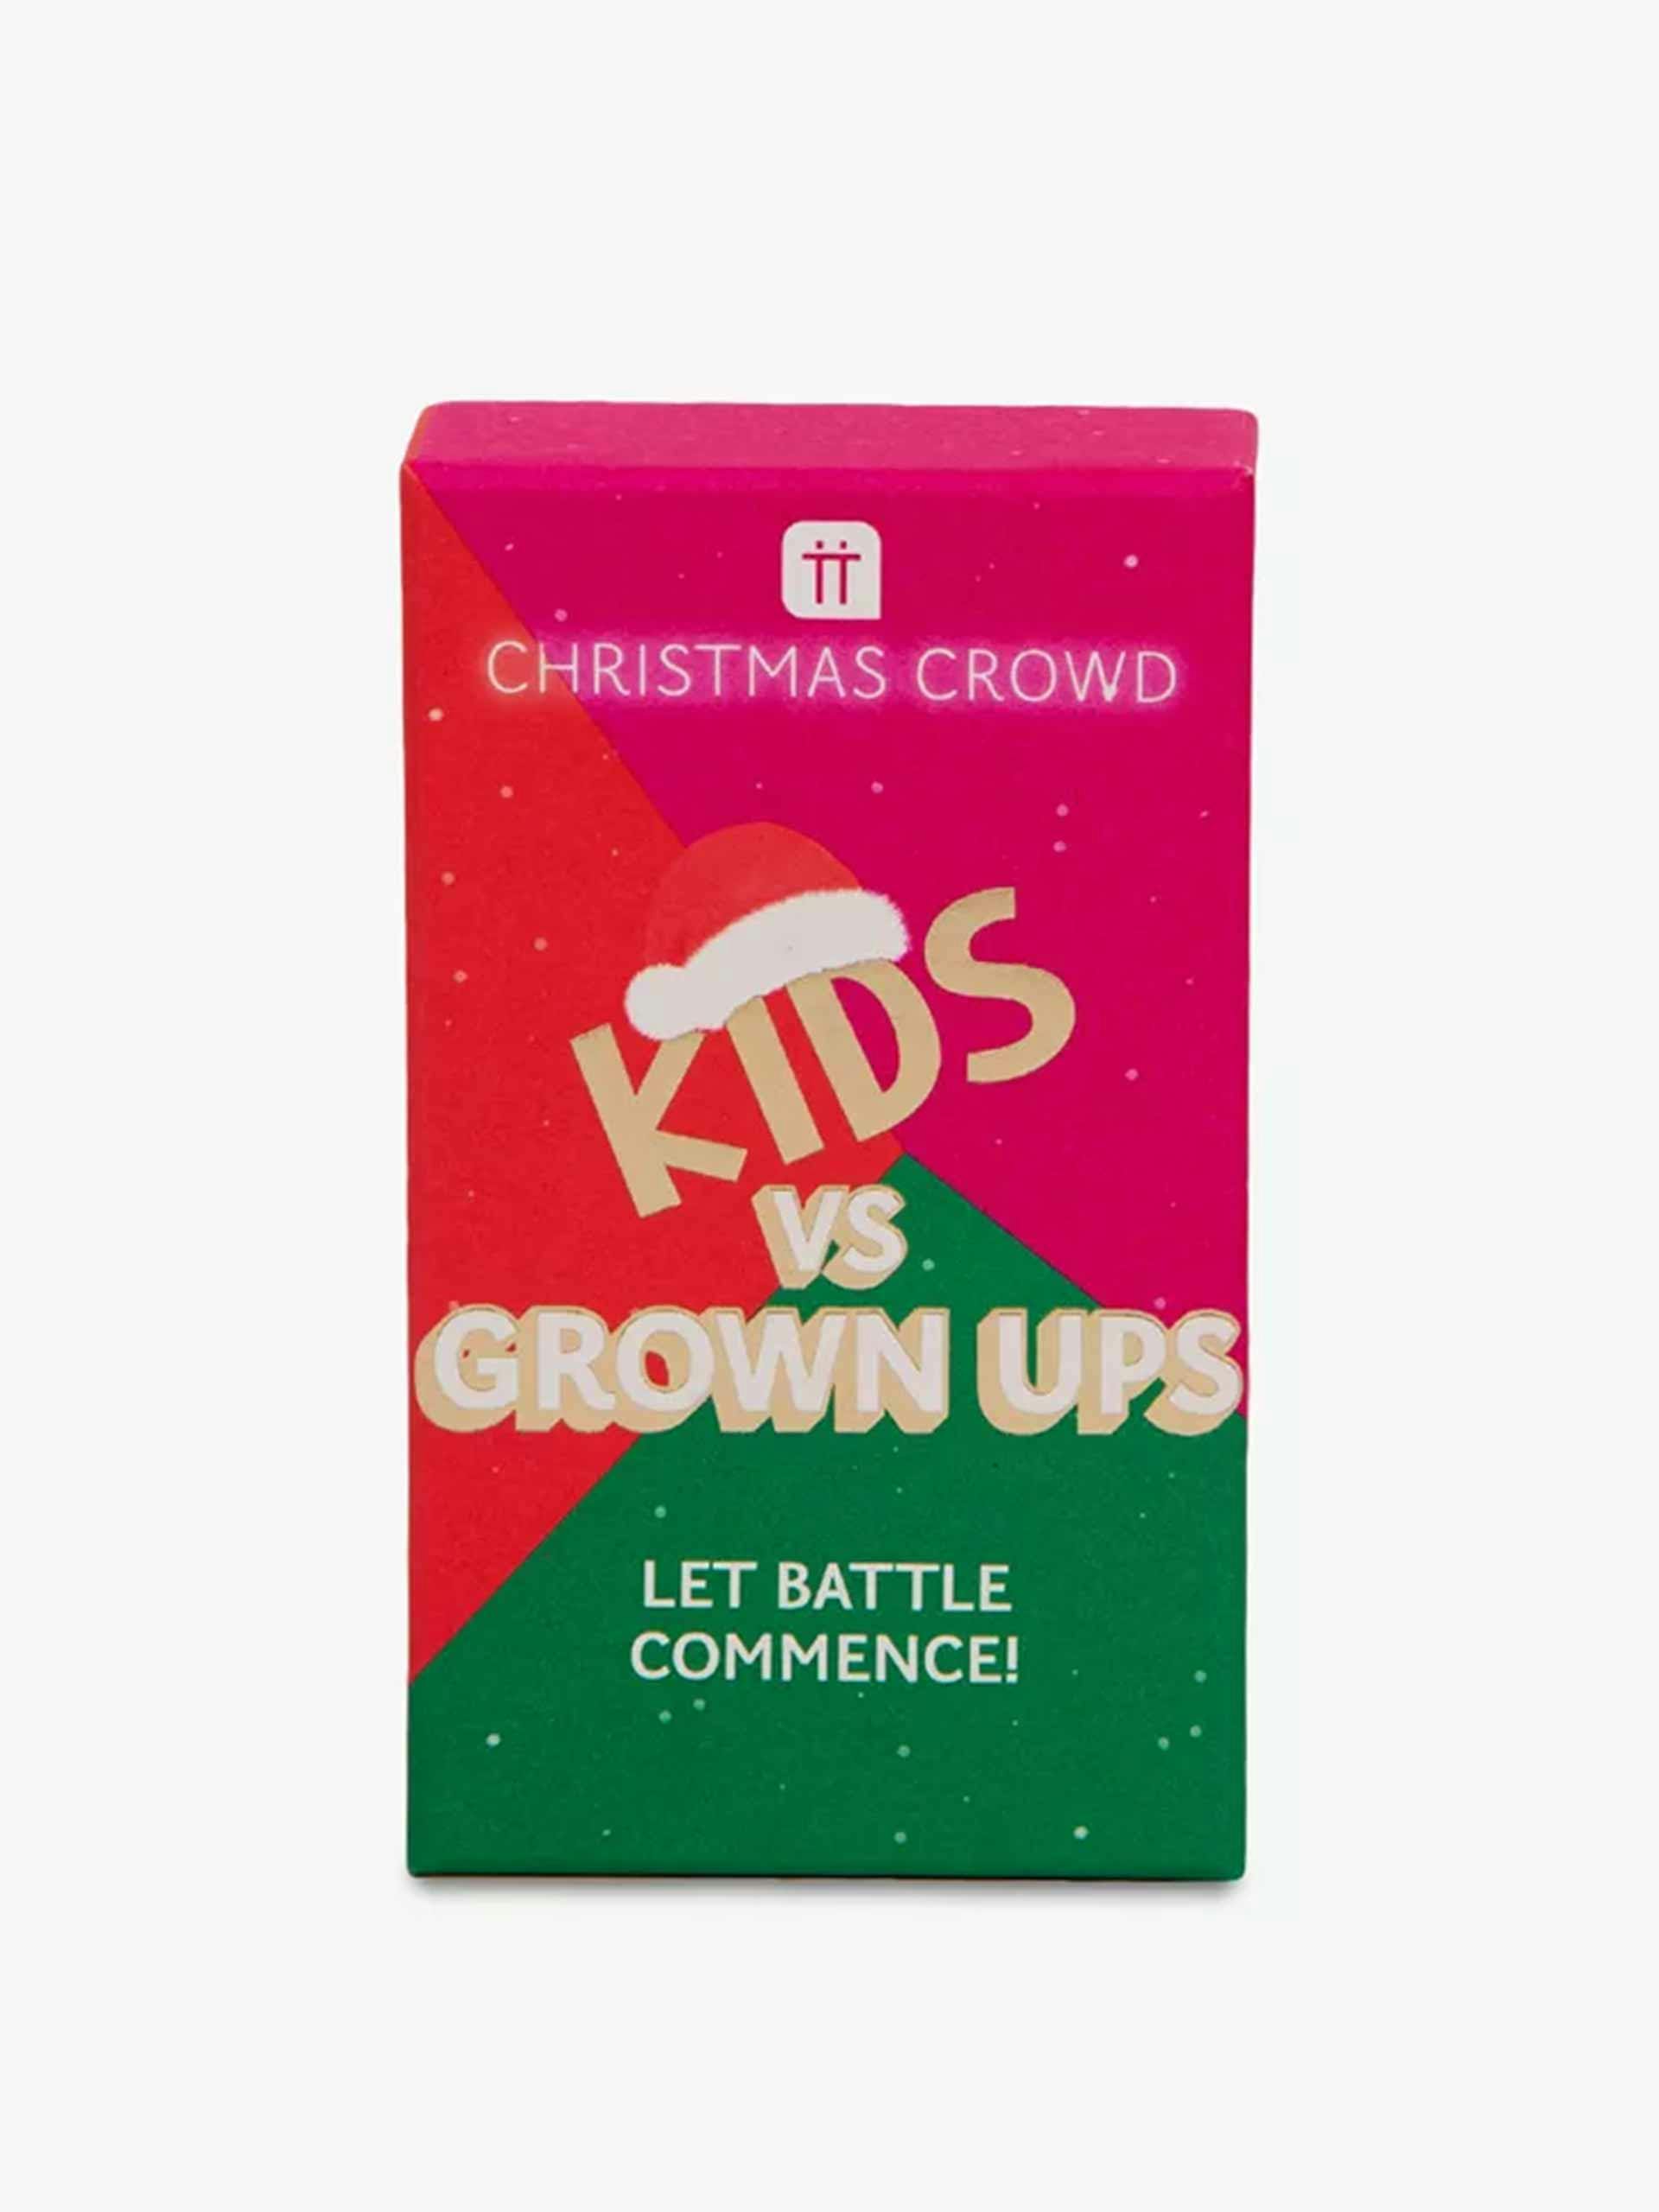 Kids vs grown ups Christmas trivia game